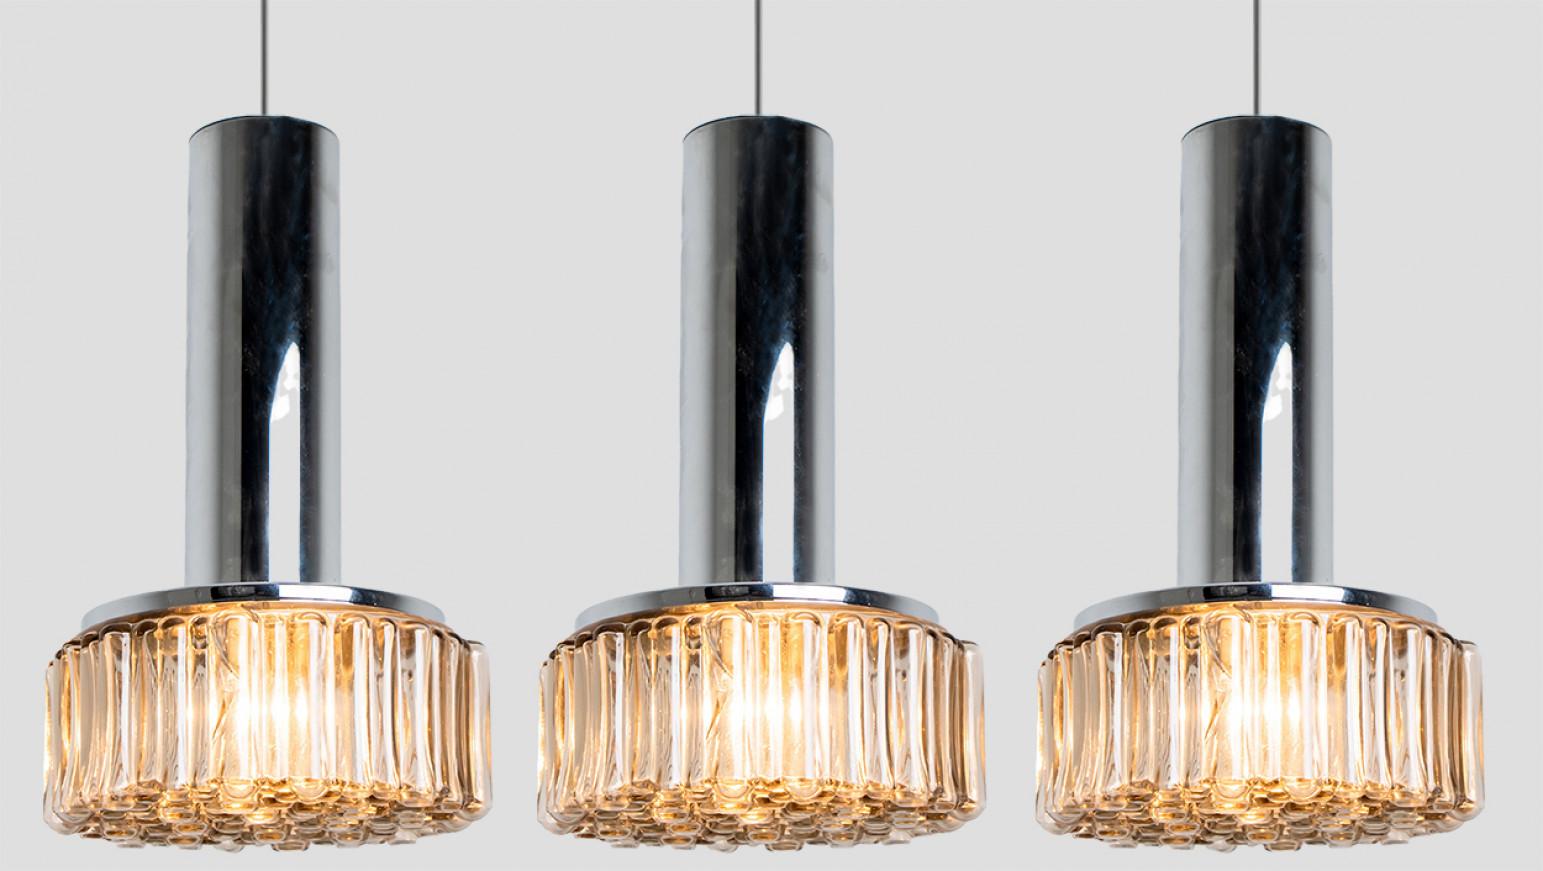 L'une des trois lampes suspendues originales des années 1970 produites par Staff Leuchten, Allemagne.
Luminaires en verre de qualité supérieure avec abat-jour en verre bullé sur une suspension en chrome argenté clair. Pièces originales.
Cet article